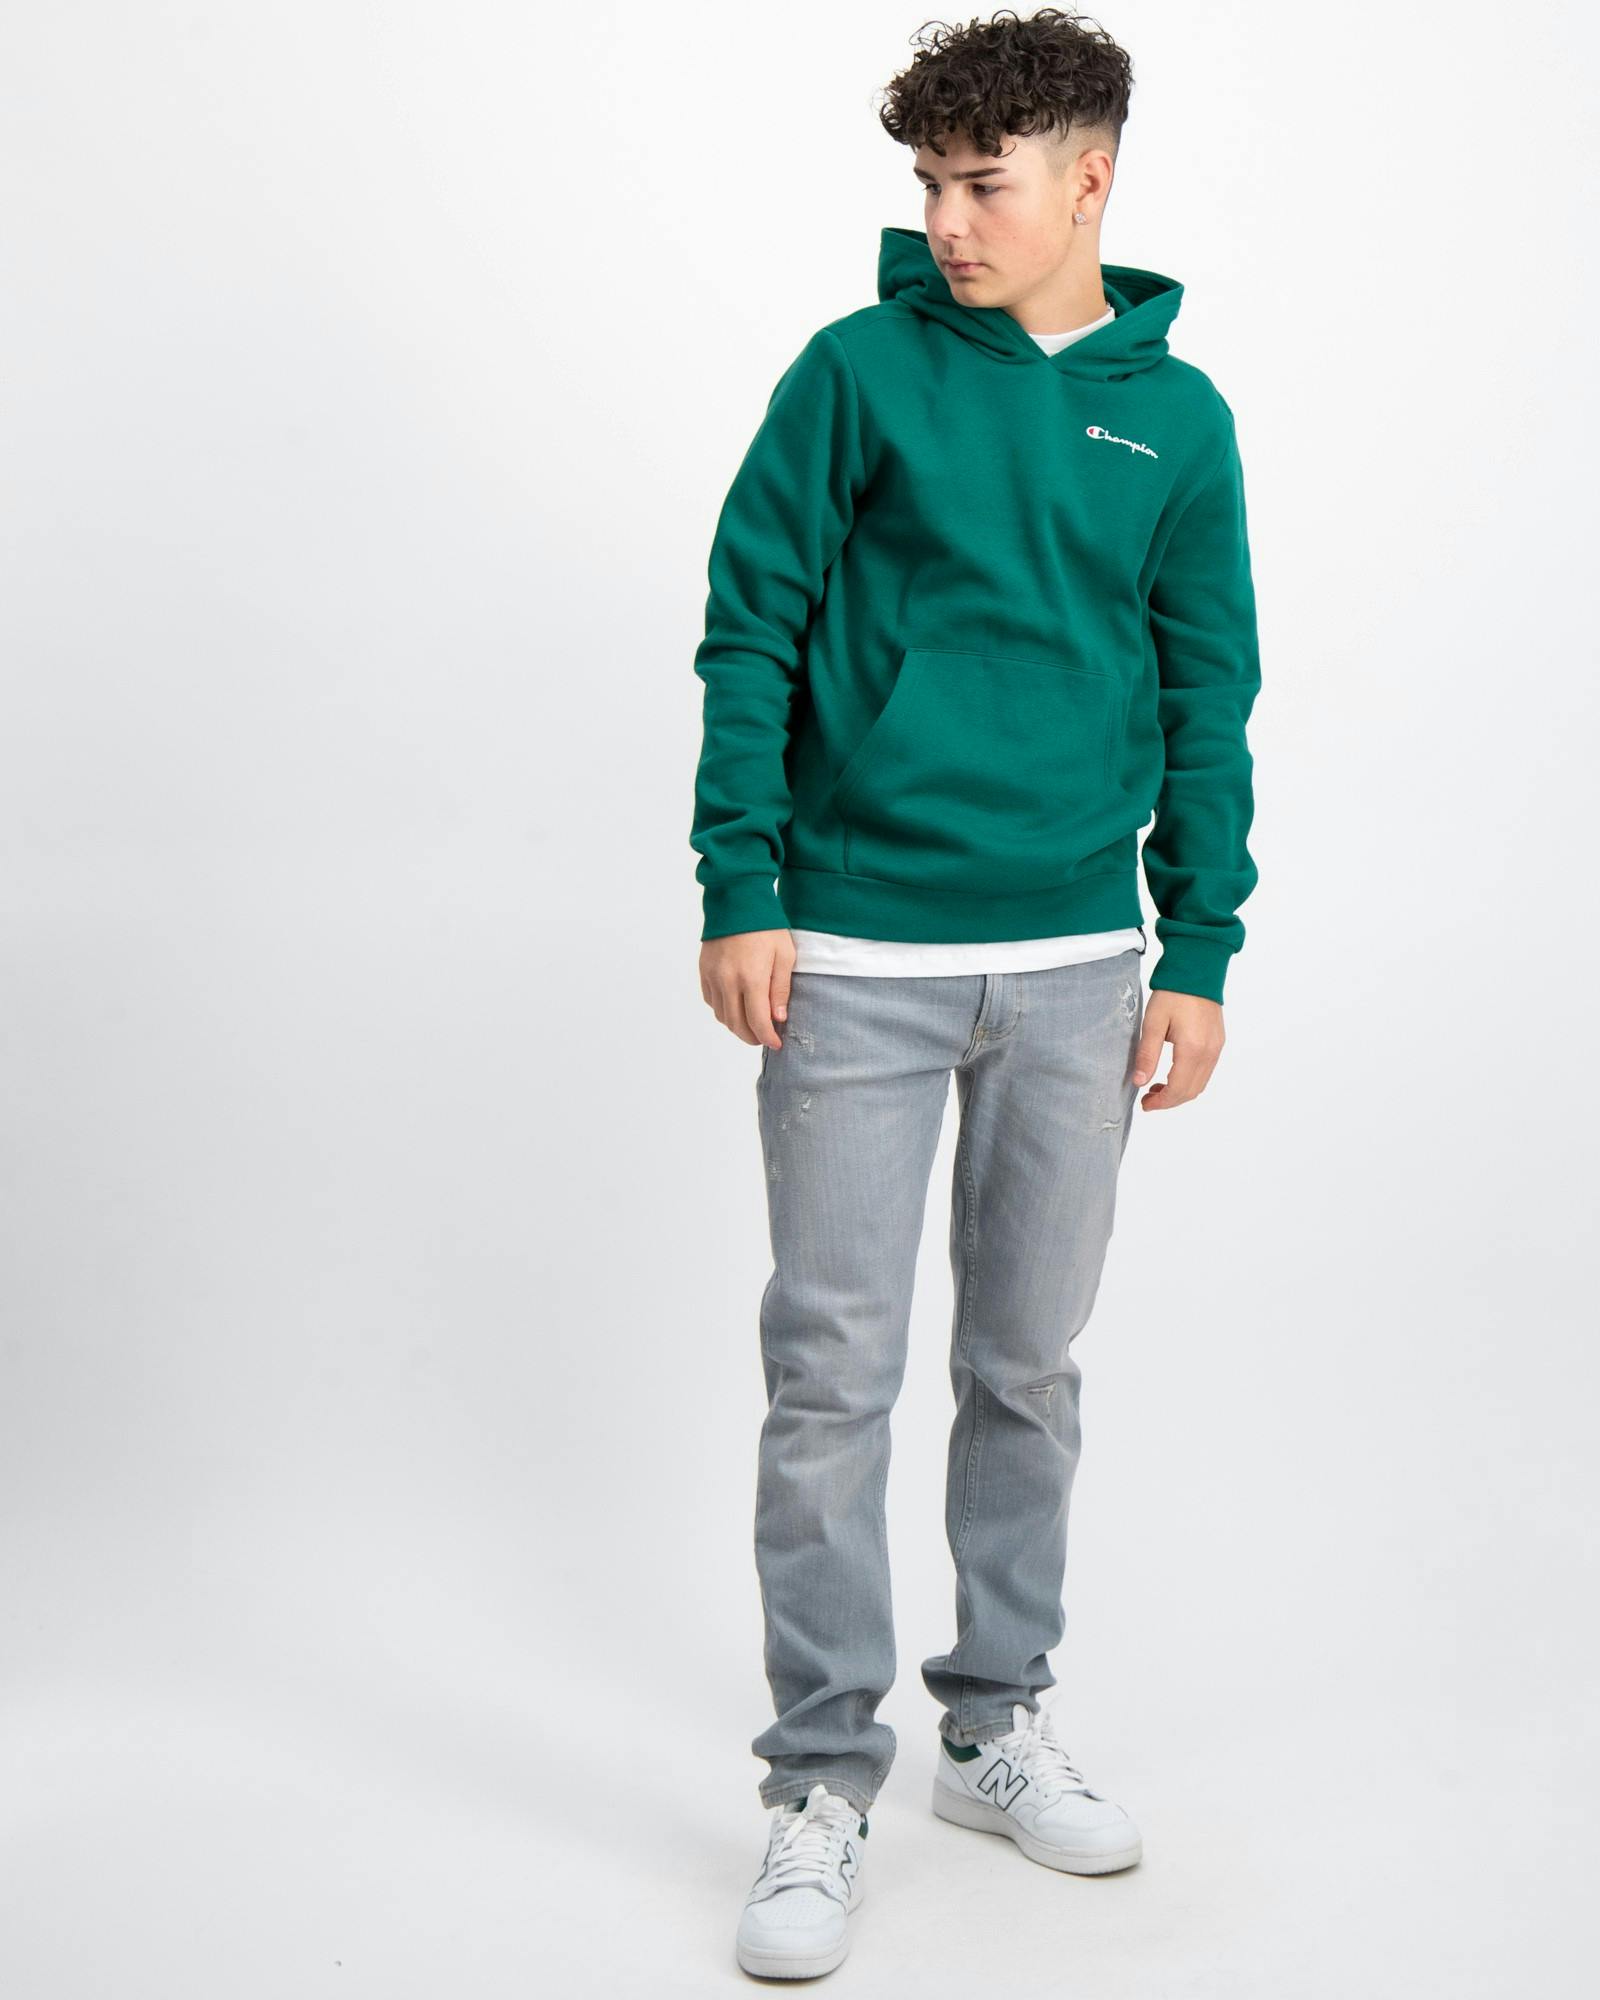 Store Brand Grün Hooded Jungen | Sweatshirt für Kids